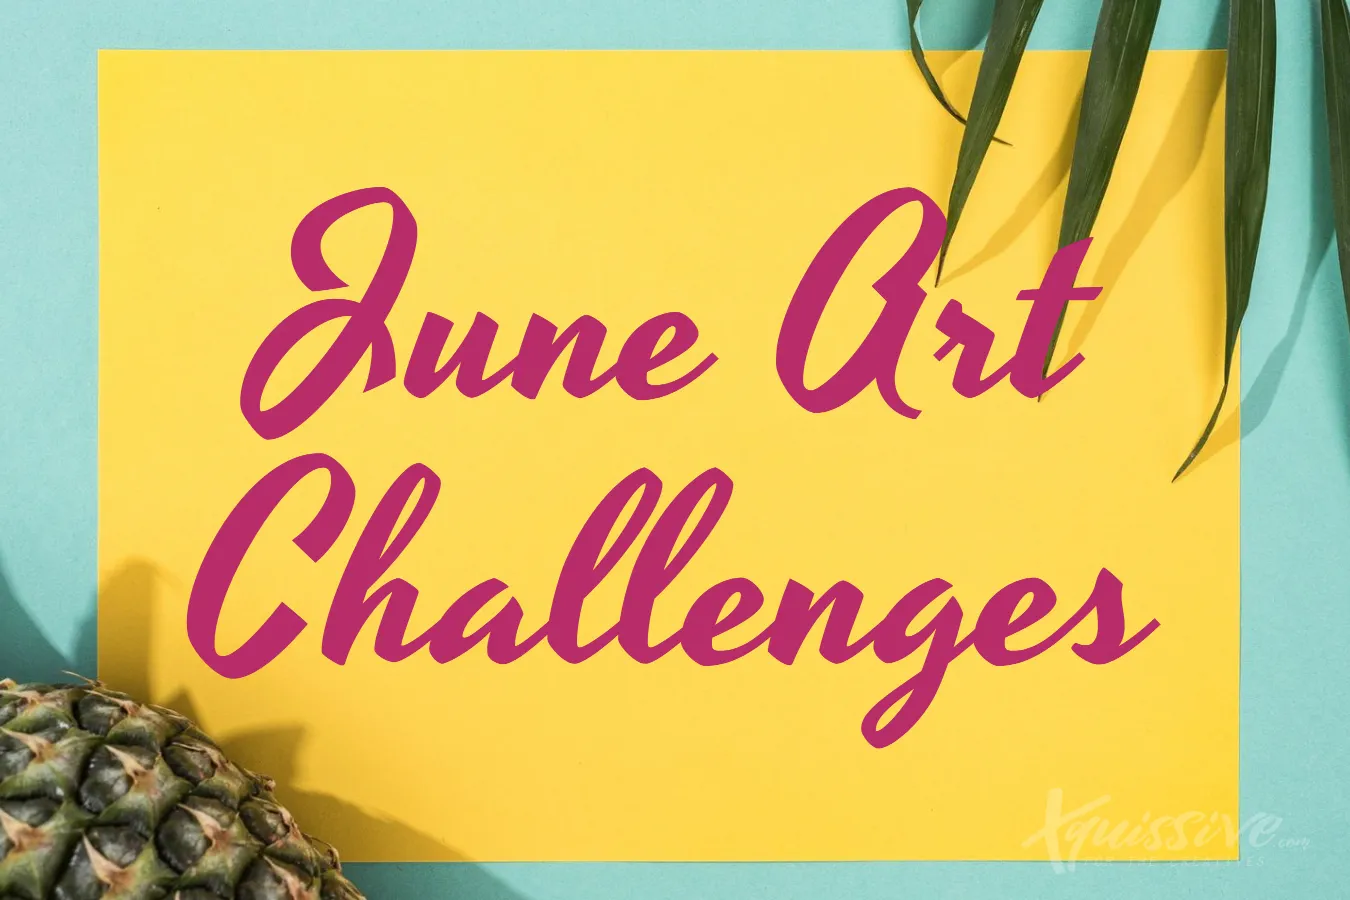 JUNE ART CHALLENGES